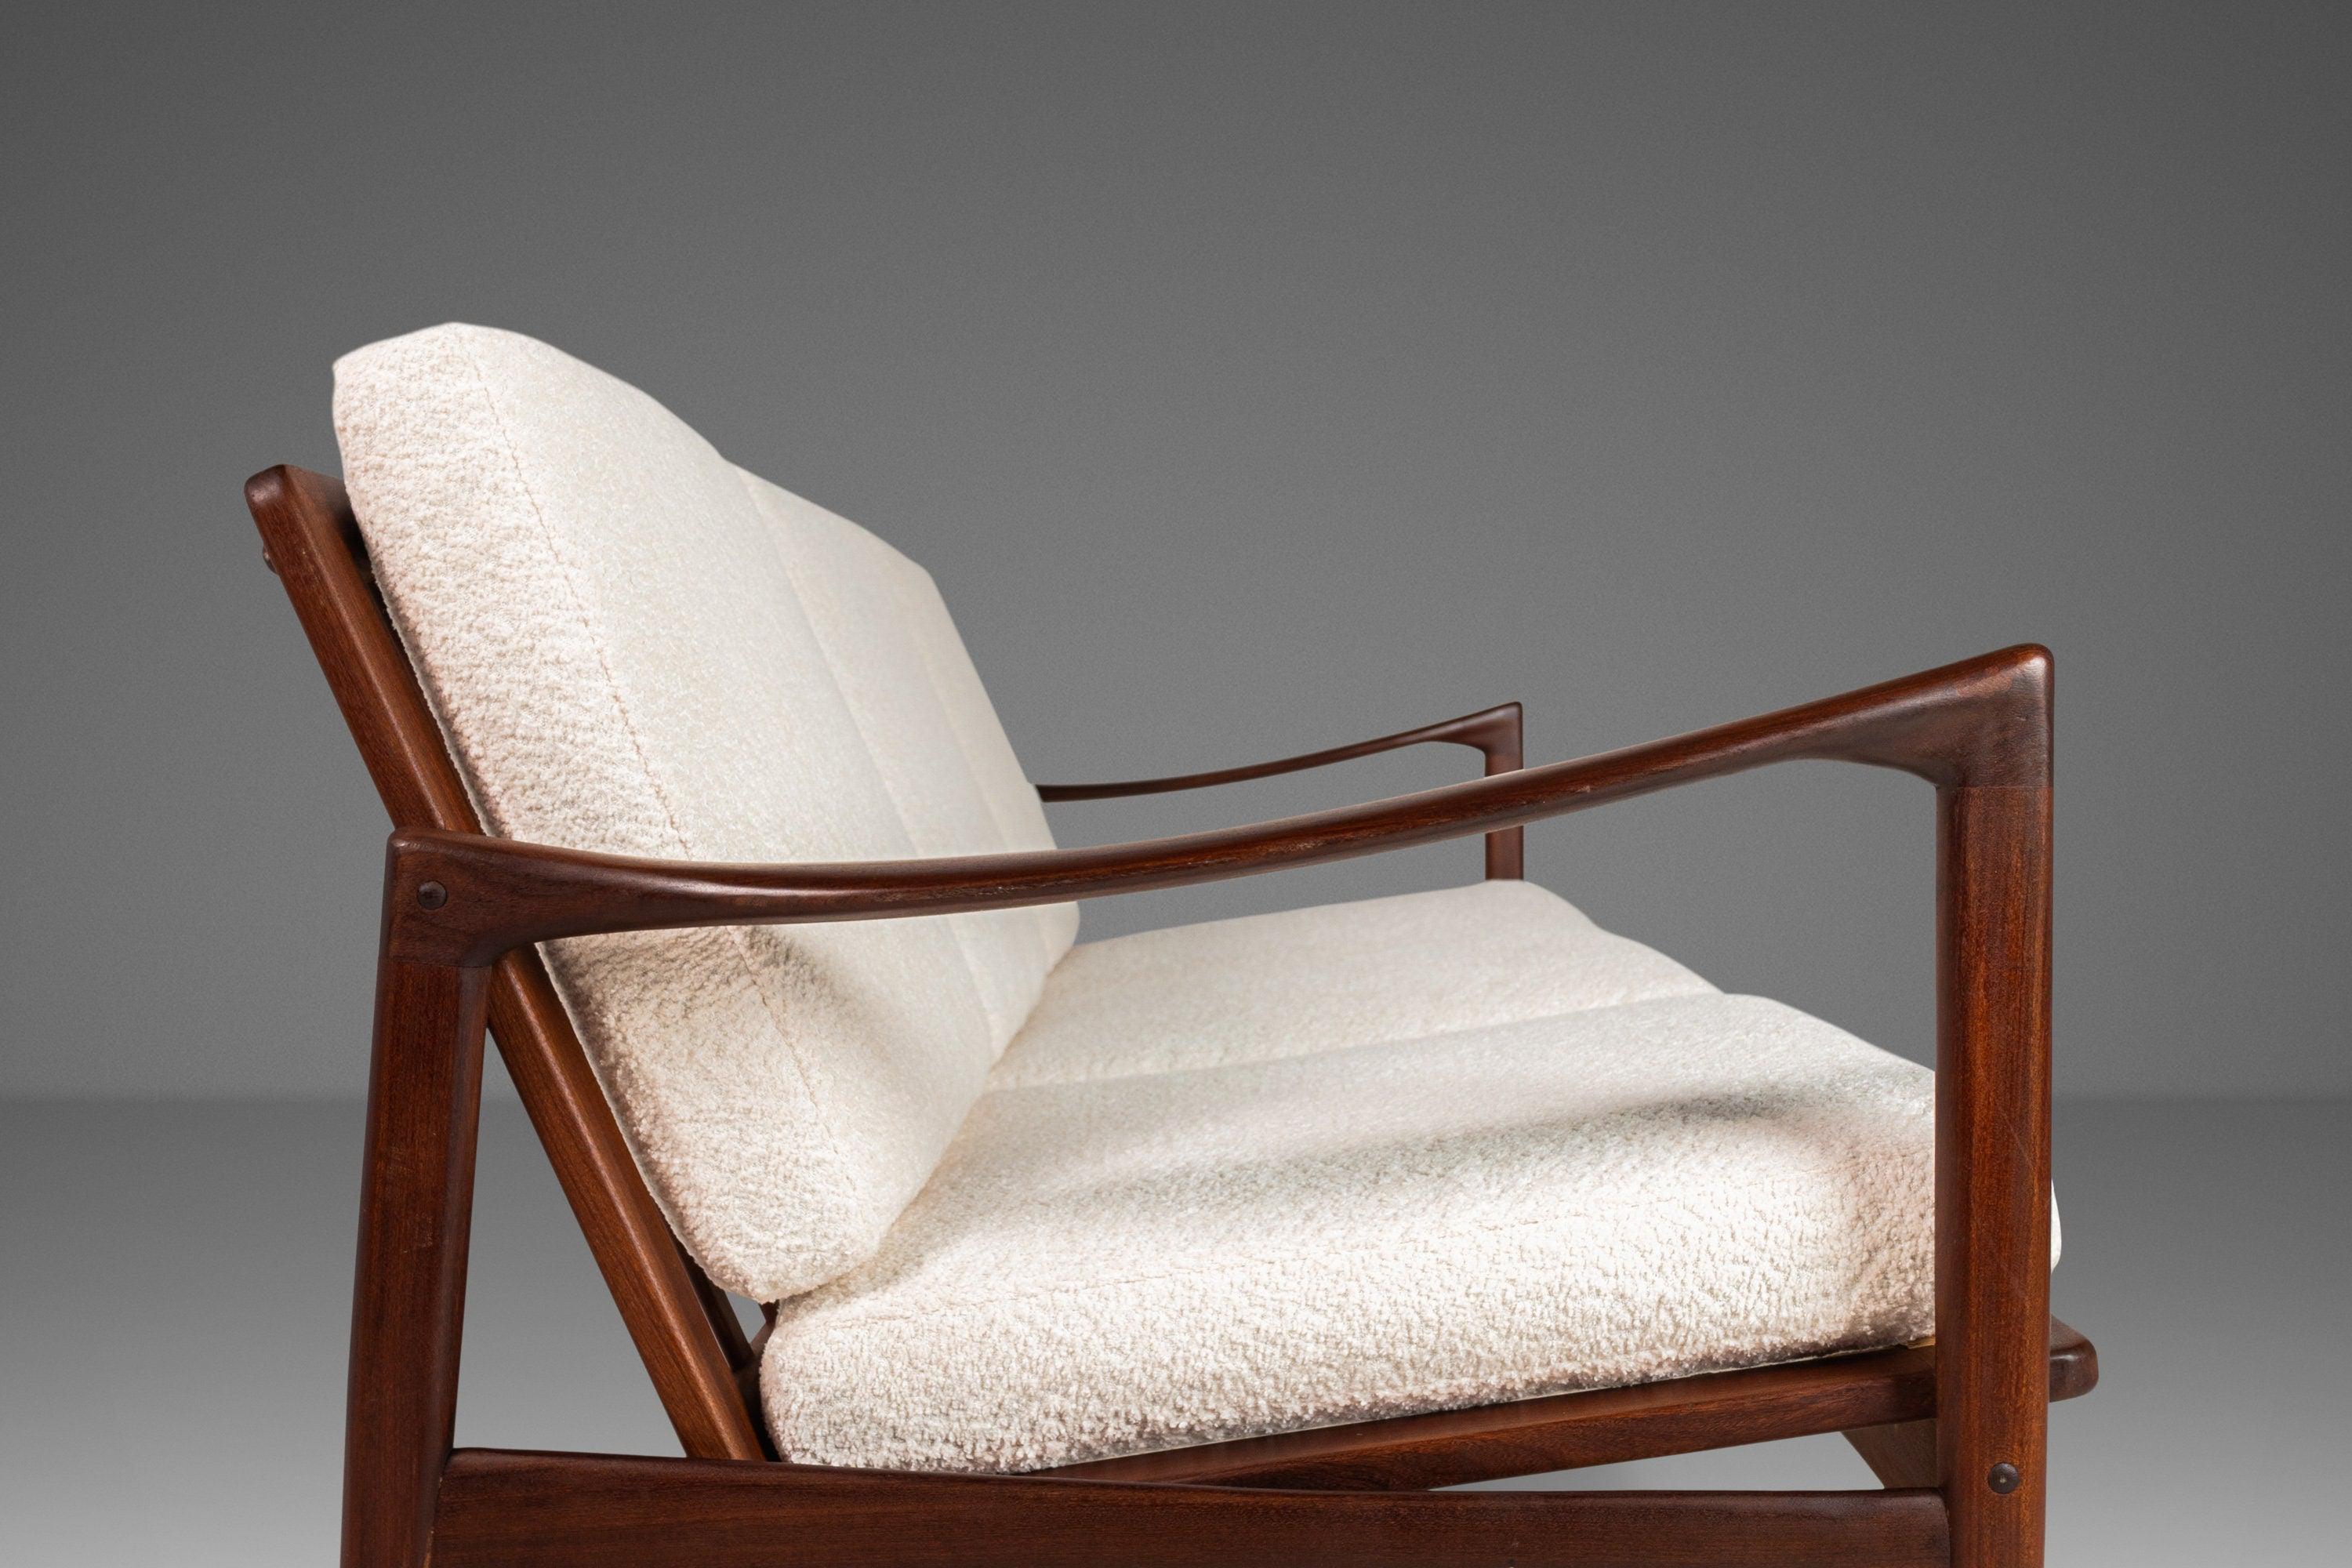 Dieses dreisitzige Kandidaten-Sofa wurde von Ib Kofod-Larsen entworfen und 1962 in Schweden von Olof Person hergestellt. Dieses ikonische Design aus massivem Teakholz zeichnet sich durch zylindrische, konisch zulaufende Beine mit langen, gebogenen